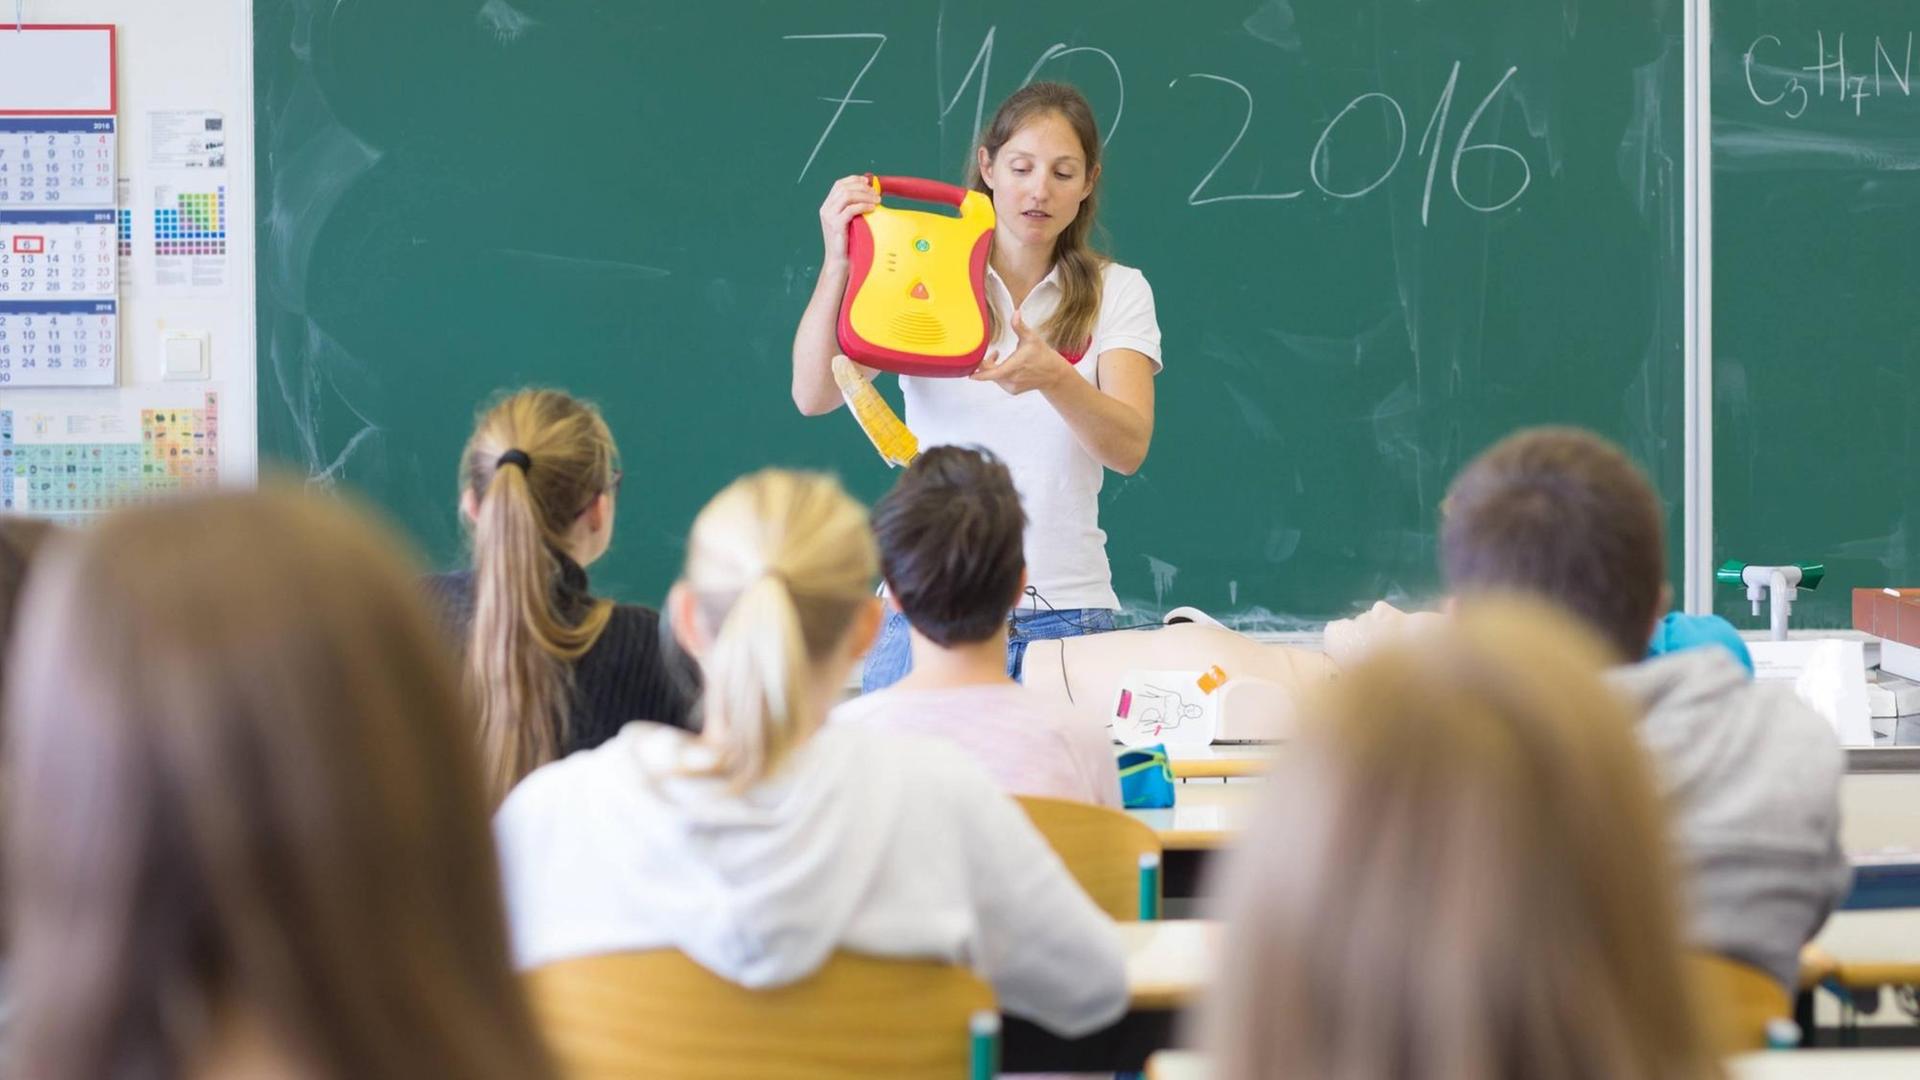 Ein Frau hält vor einer Schulklasse einen gelb-roten Kasten in die Höhe.